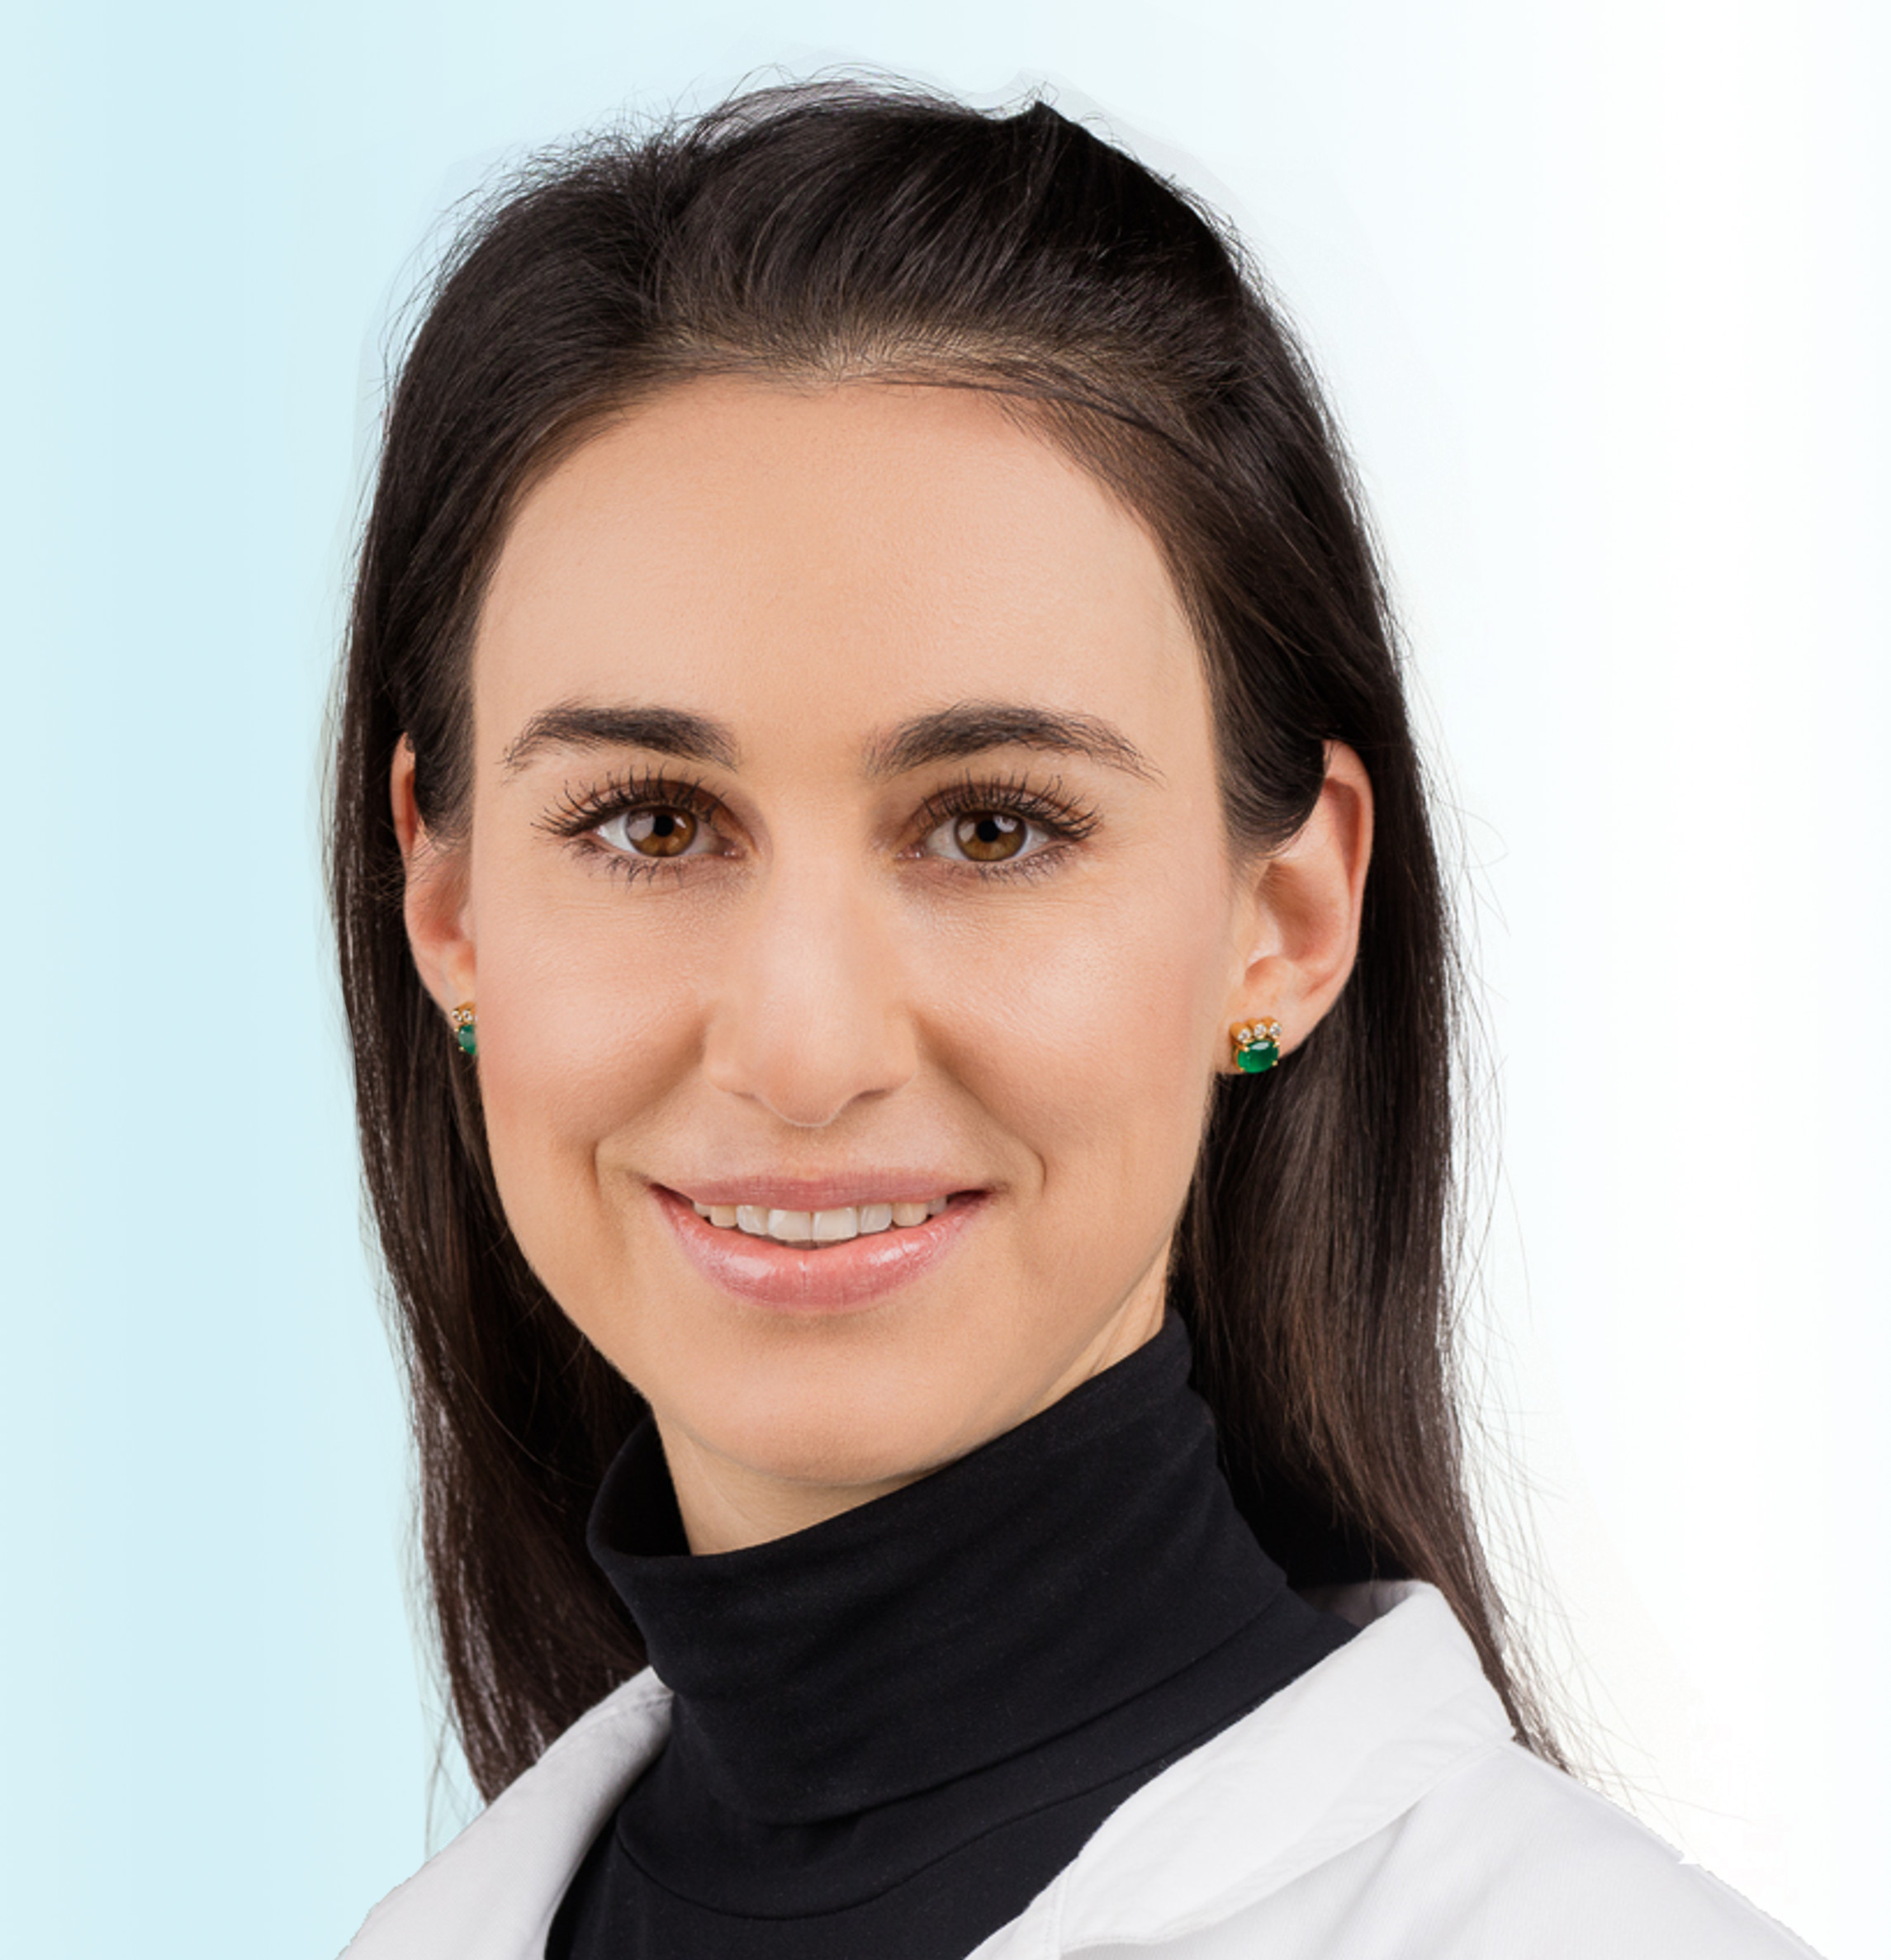 Dermatologo, Dr. med. Valentina Bänninger